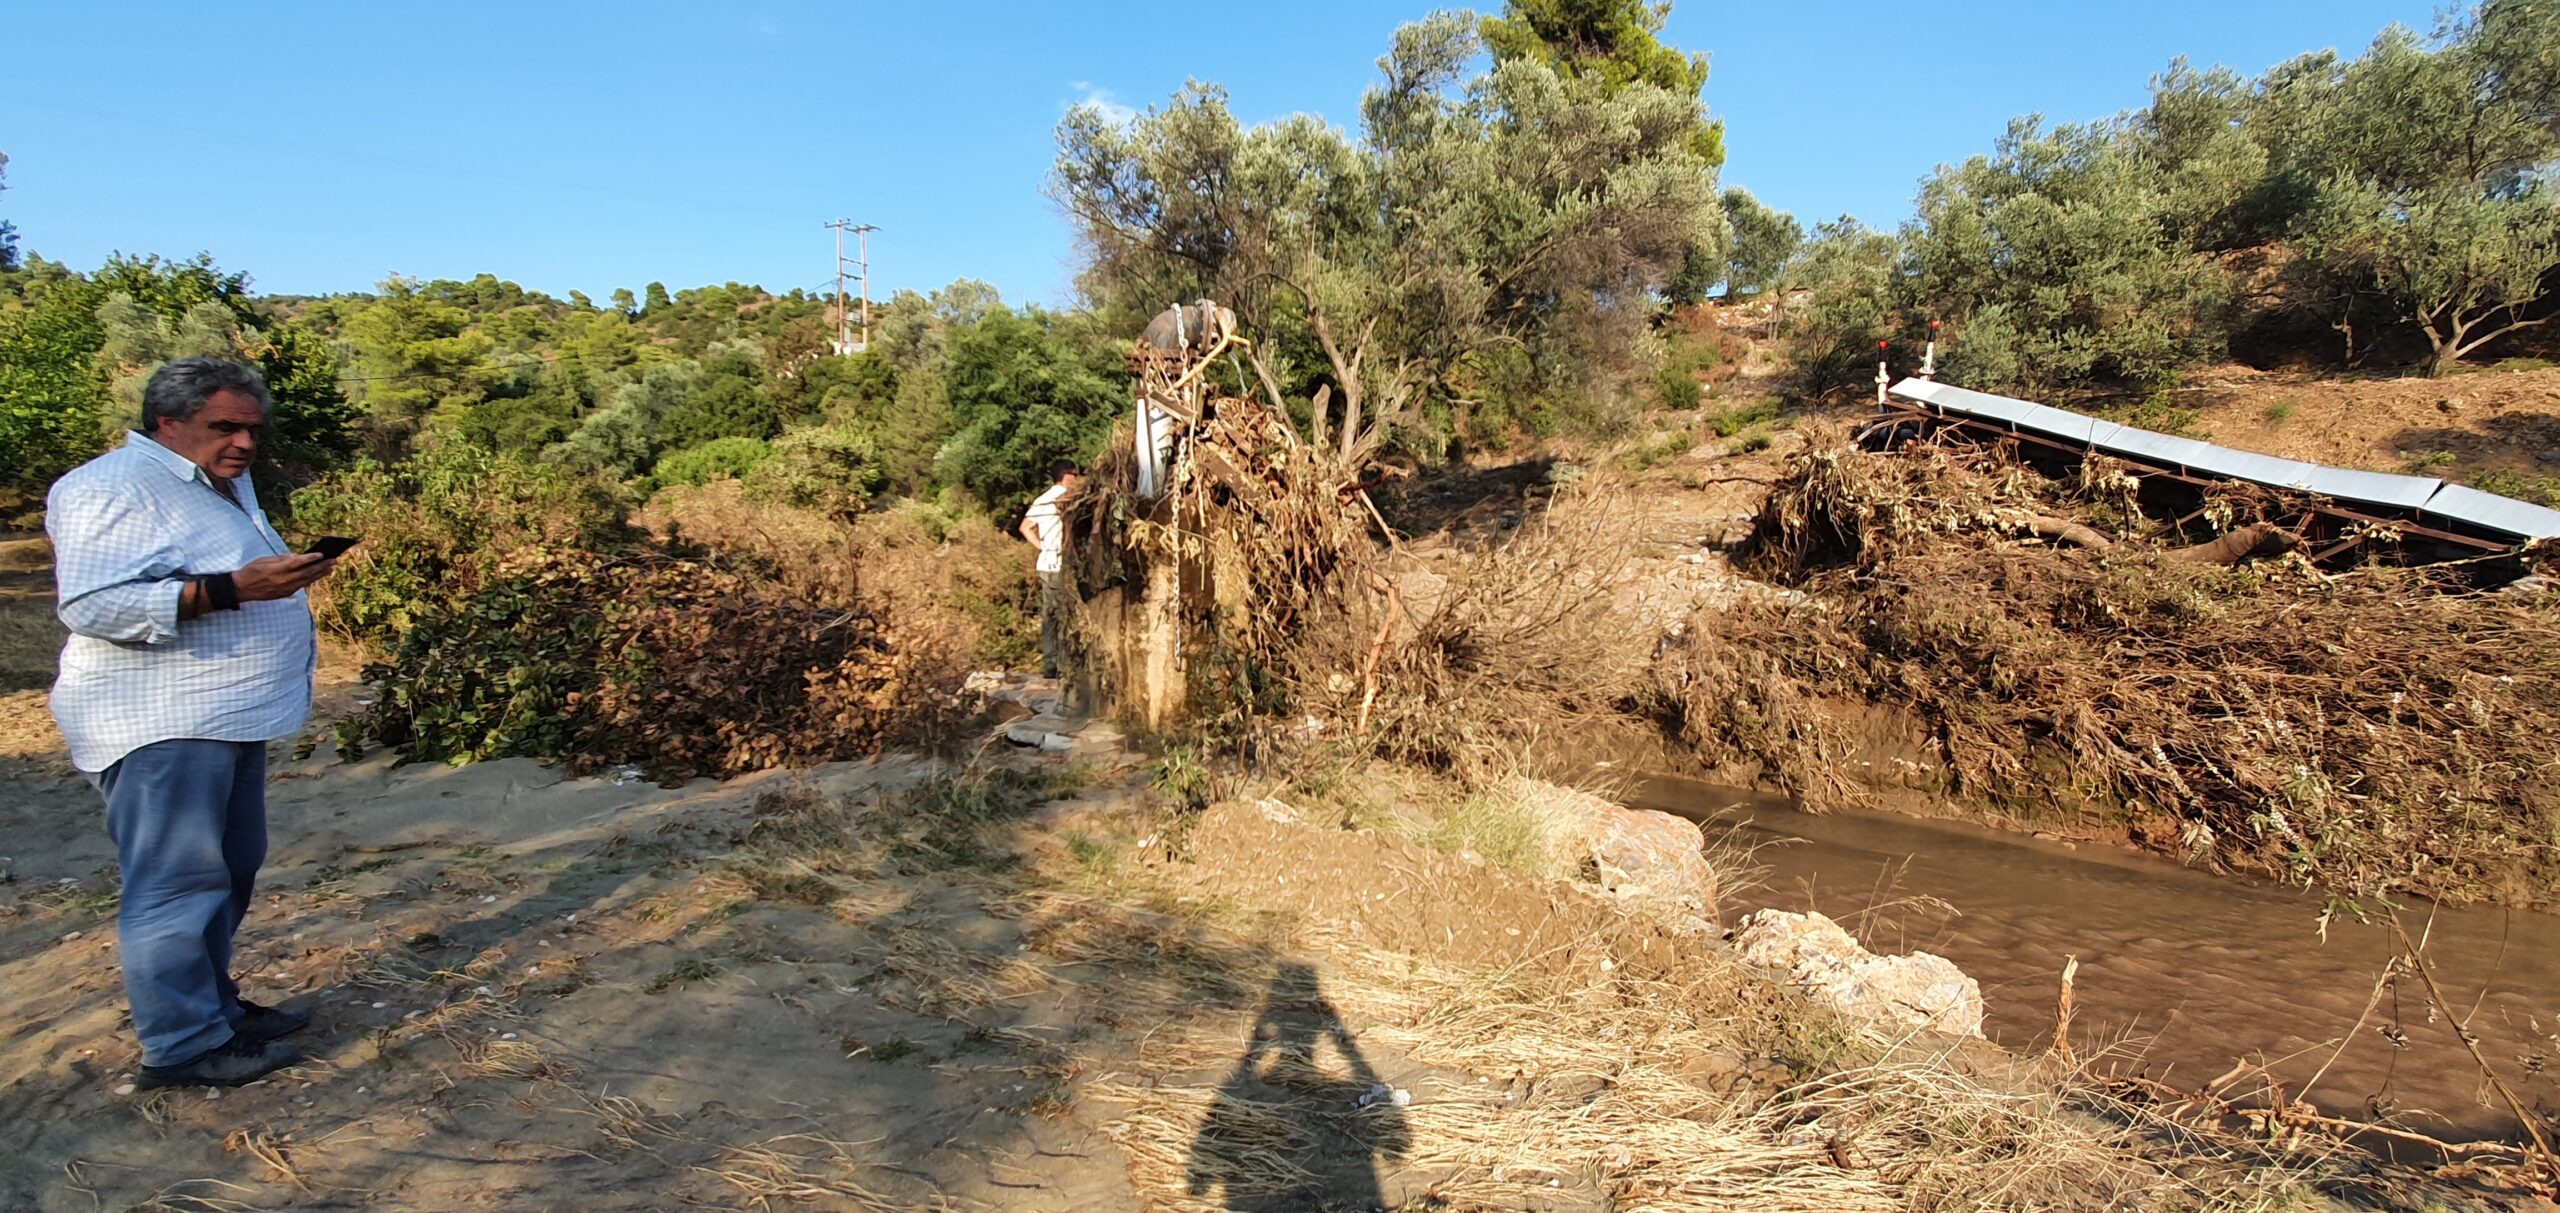 Αποκαθίσταται σταδιακά η υδροδότηση στον Δήμο Διρφύων Μεσσαπίων [εικόνες]